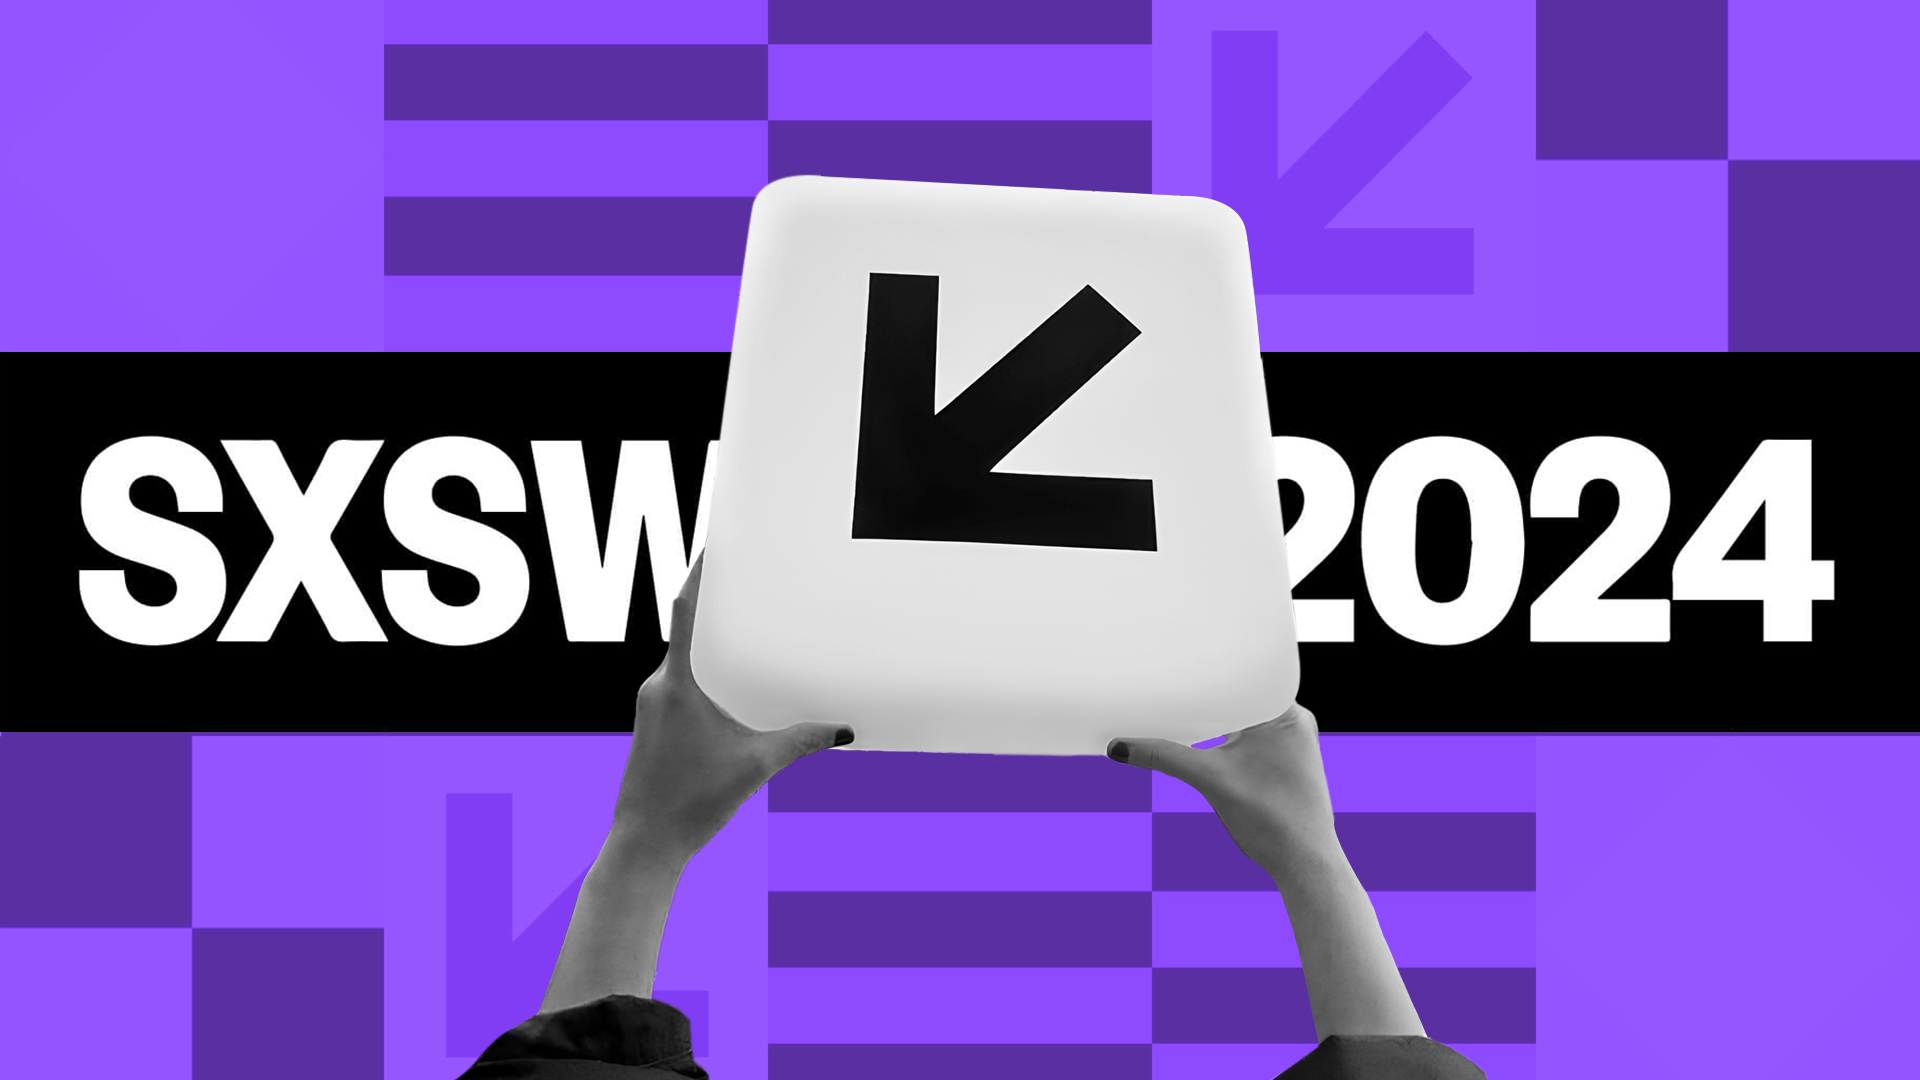 Descubra tudo sobre o SXSW, a sua relevância para o mercado empresarial e as tendências que vão ditar o mundo dos negócios em 2024!